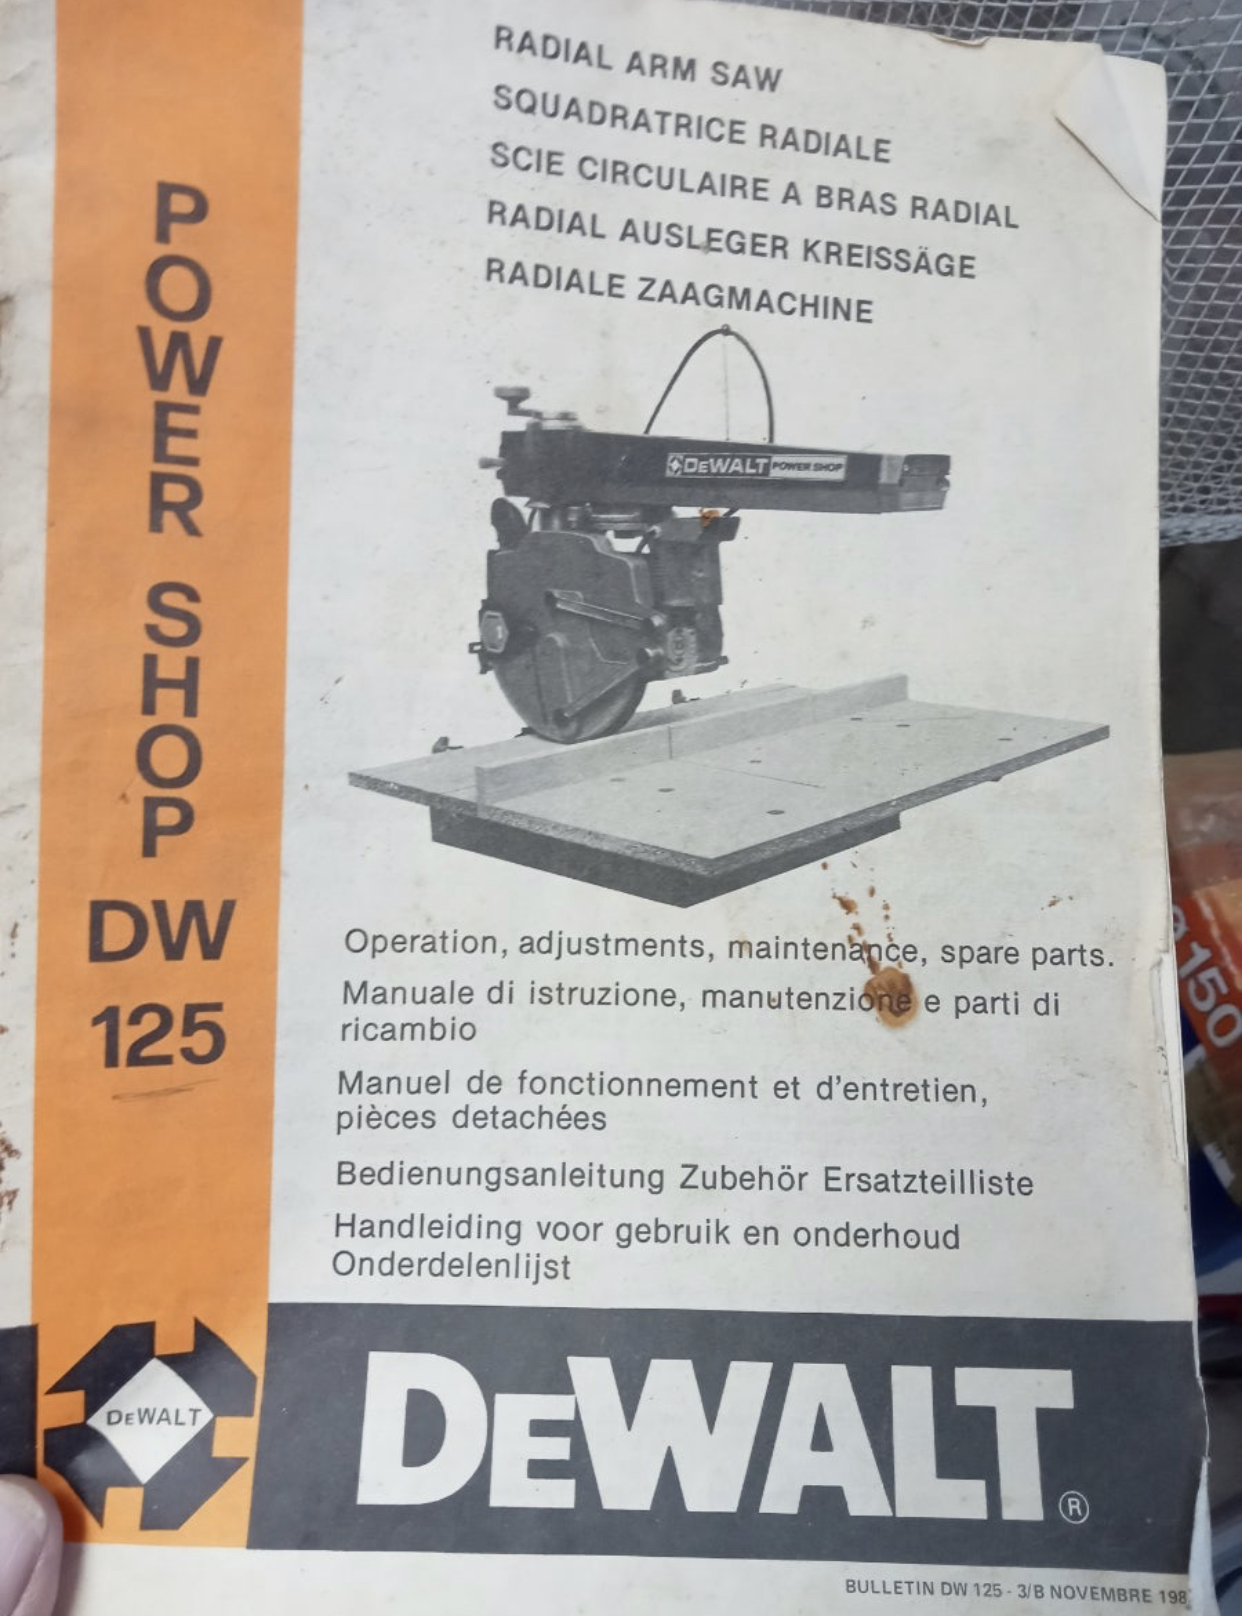 Sierra de brazo radial Dewalt Dw720 - Maquinaria y herramienta eléctrica -  Foromadera